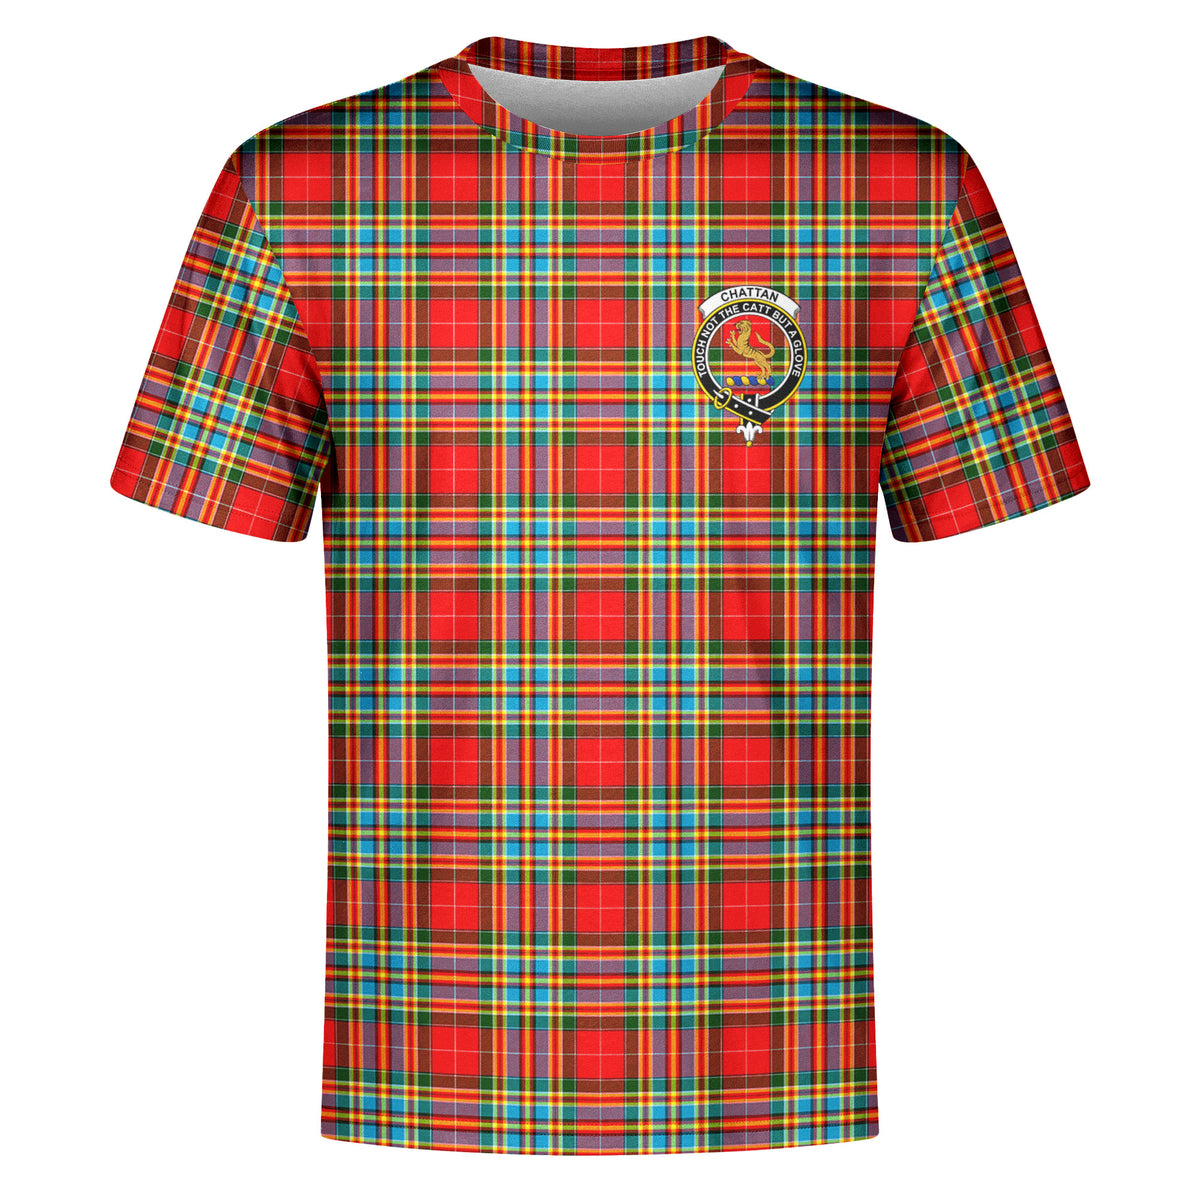 Chattan Tartan Crest T-shirt